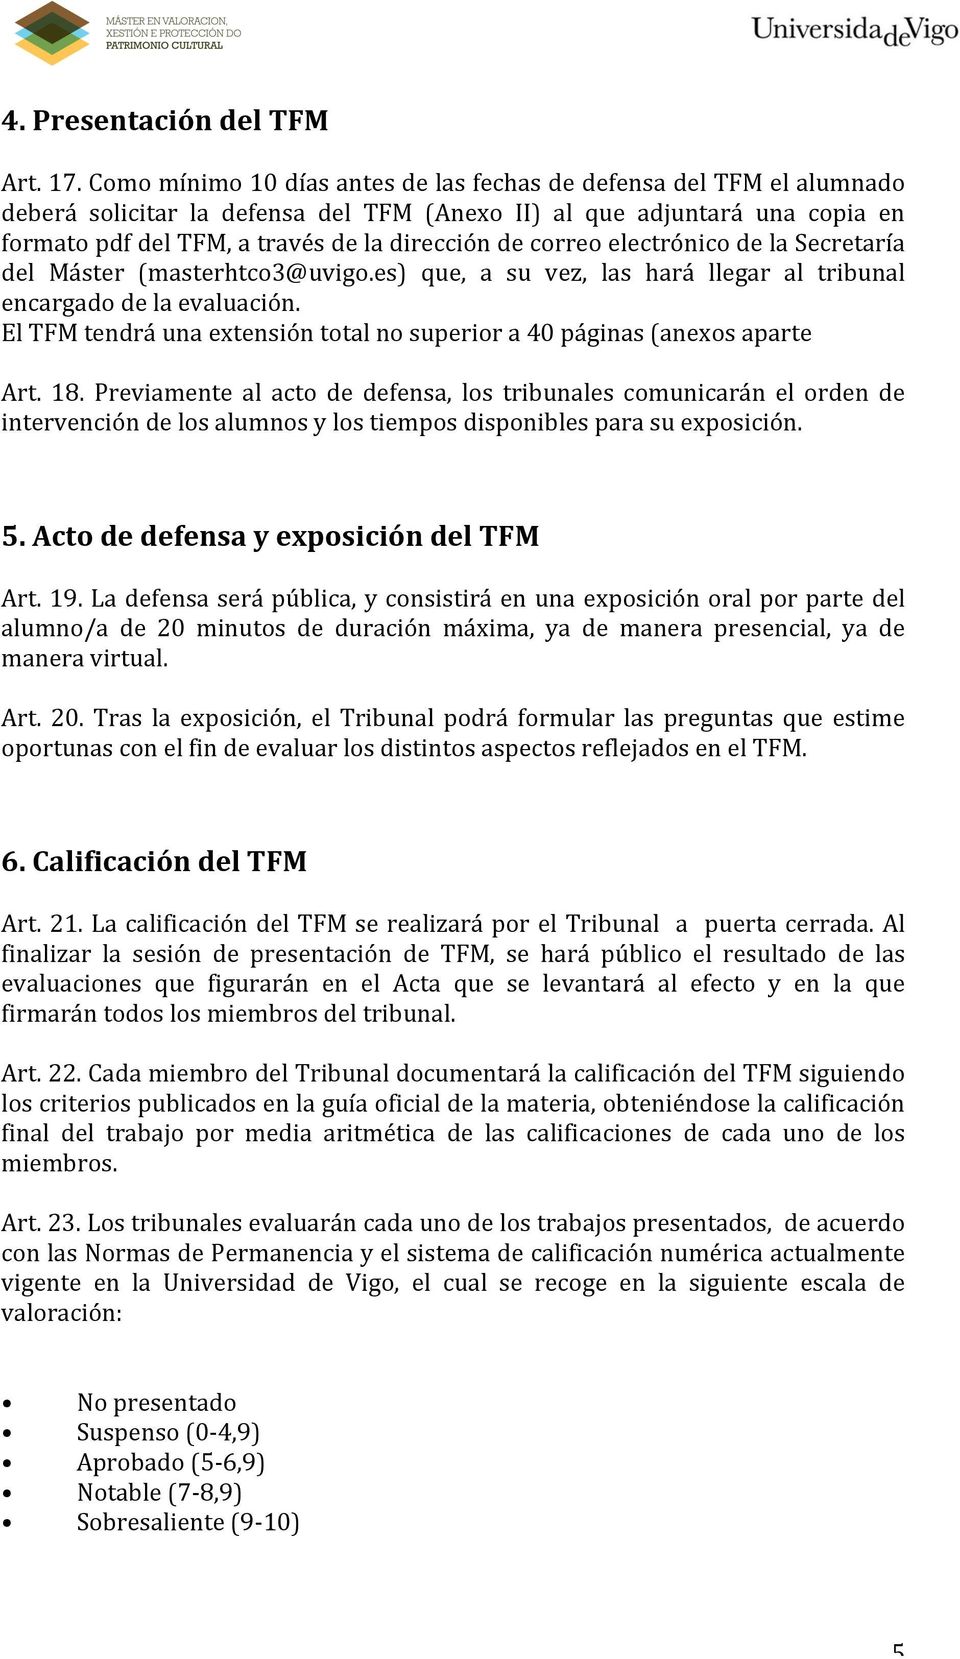 correo electrónico de la Secretaría del Máster (masterhtco3@uvigo.es) que, a su vez, las hará llegar al tribunal encargado de la evaluación.